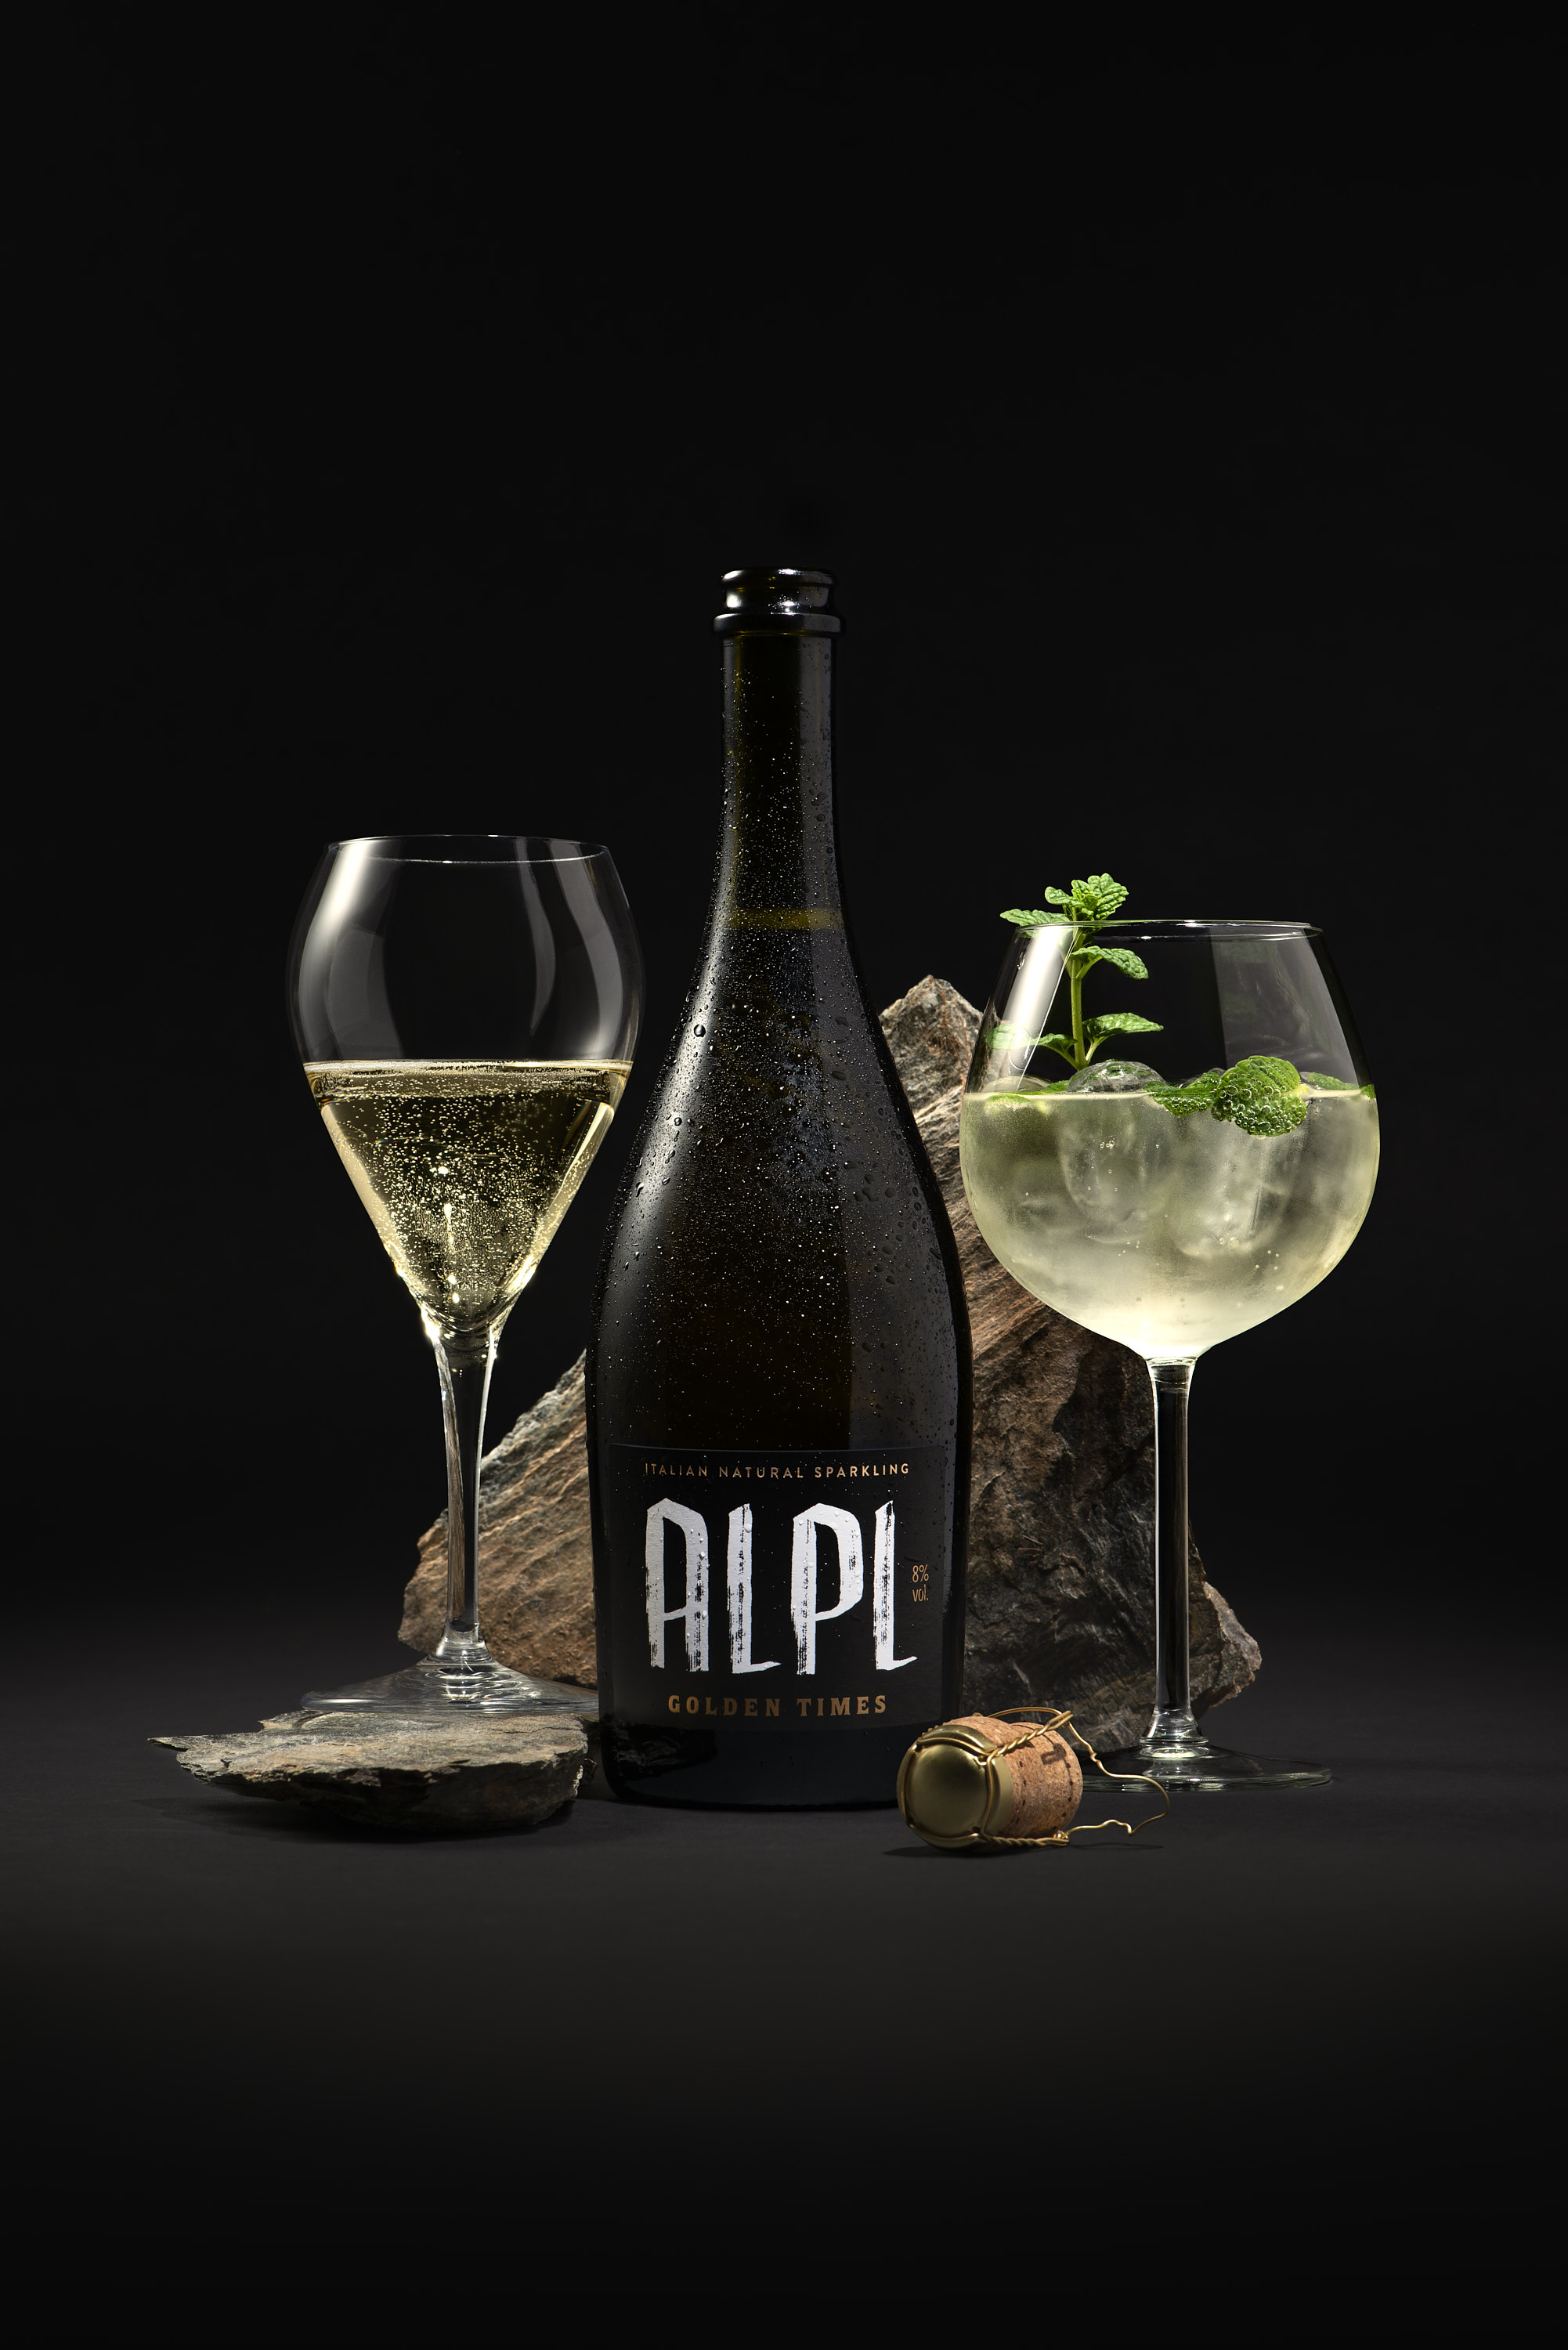 ALPL Apfelcider - Italian Natural Sparkling